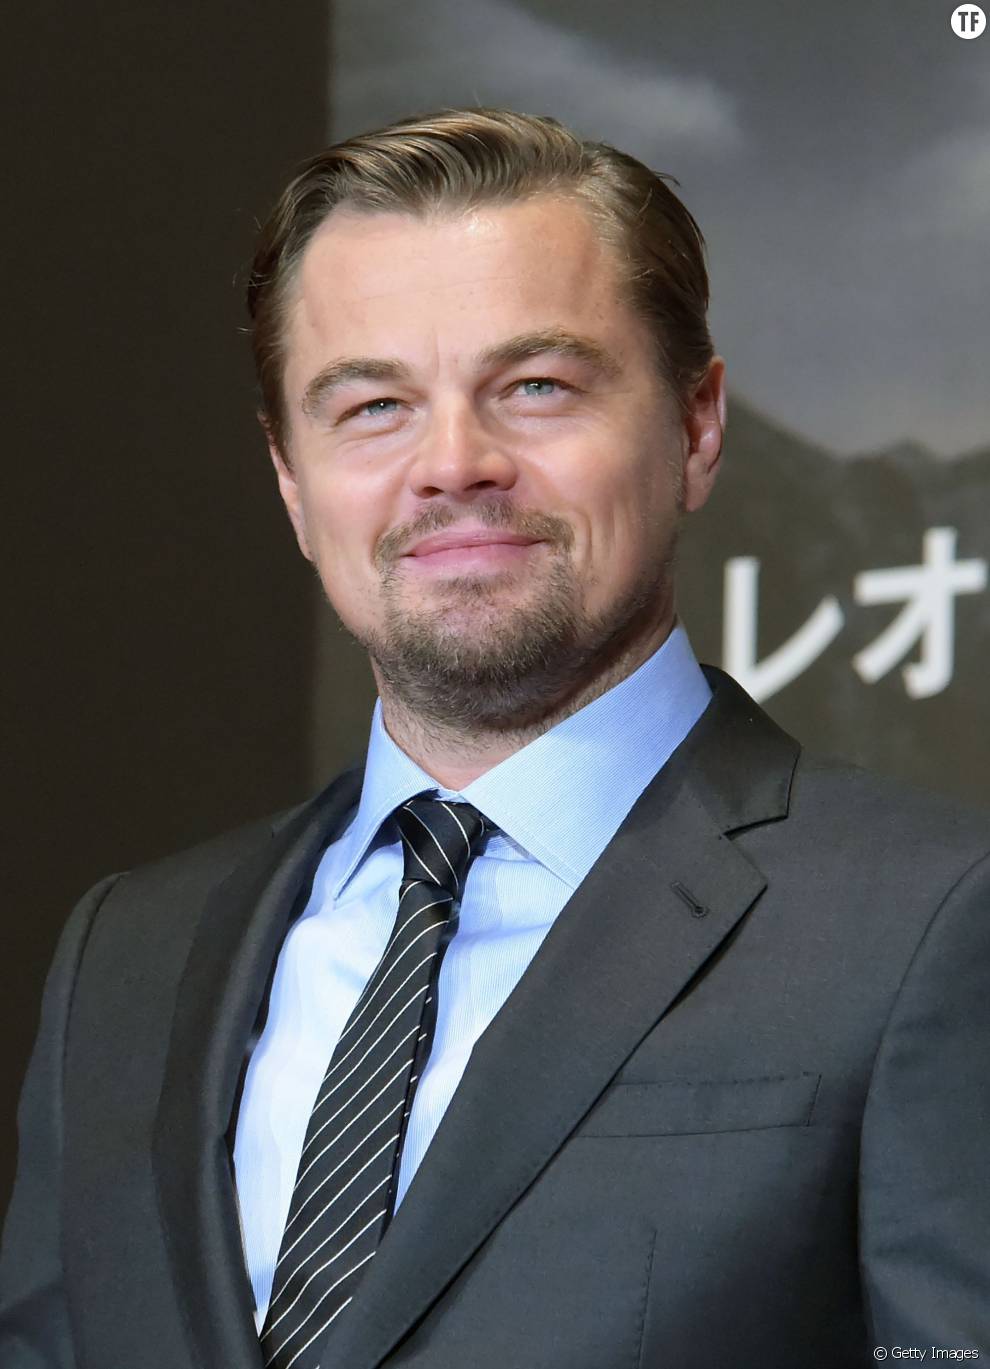 Leonardo DiCaprio en 2016 à la première de The Revenant au Japon